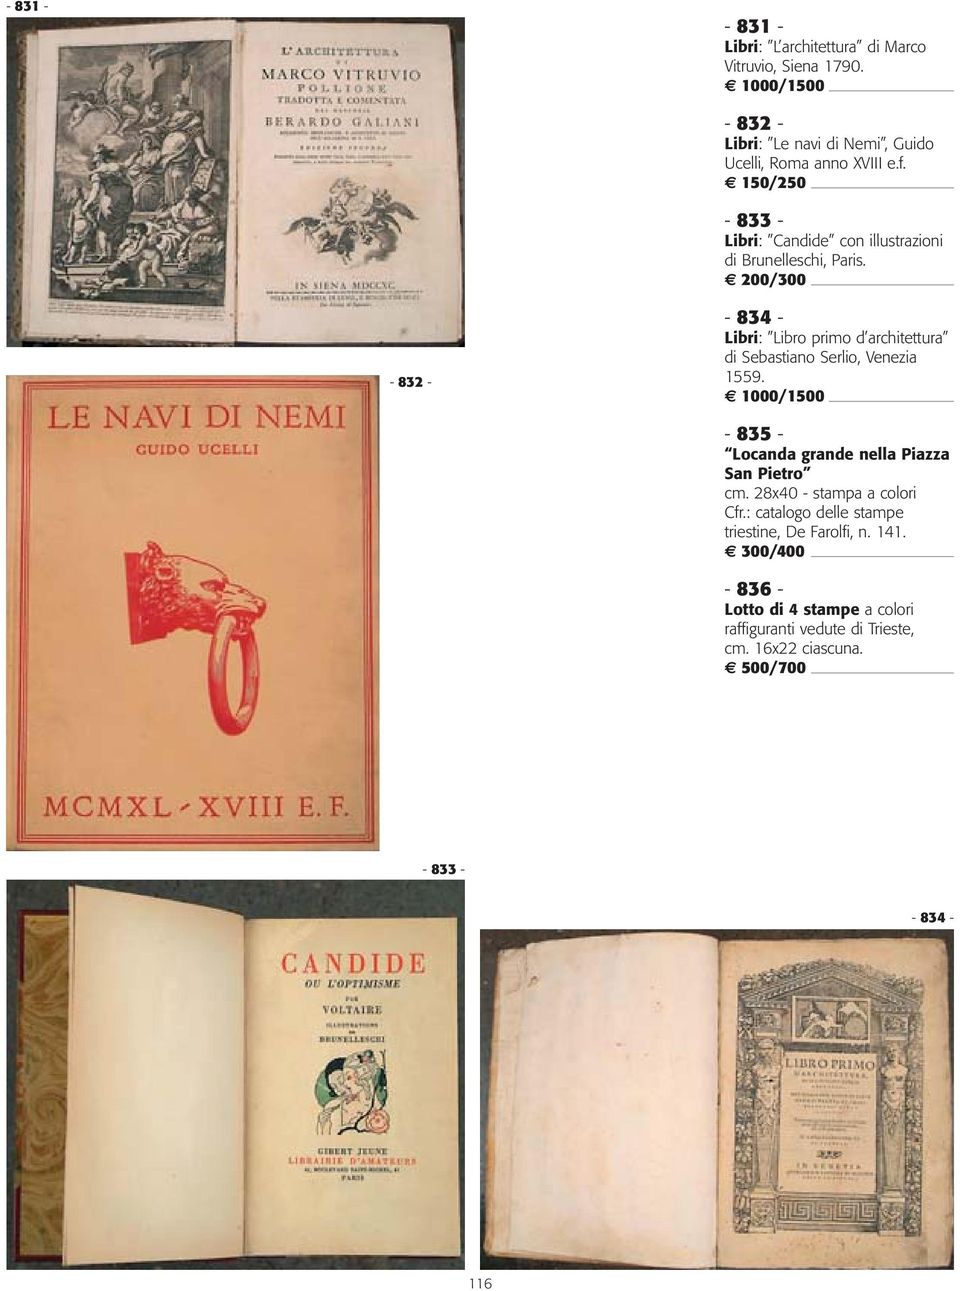 - 833 - Libri: Candide con illustrazioni di Brunelleschi, Paris.